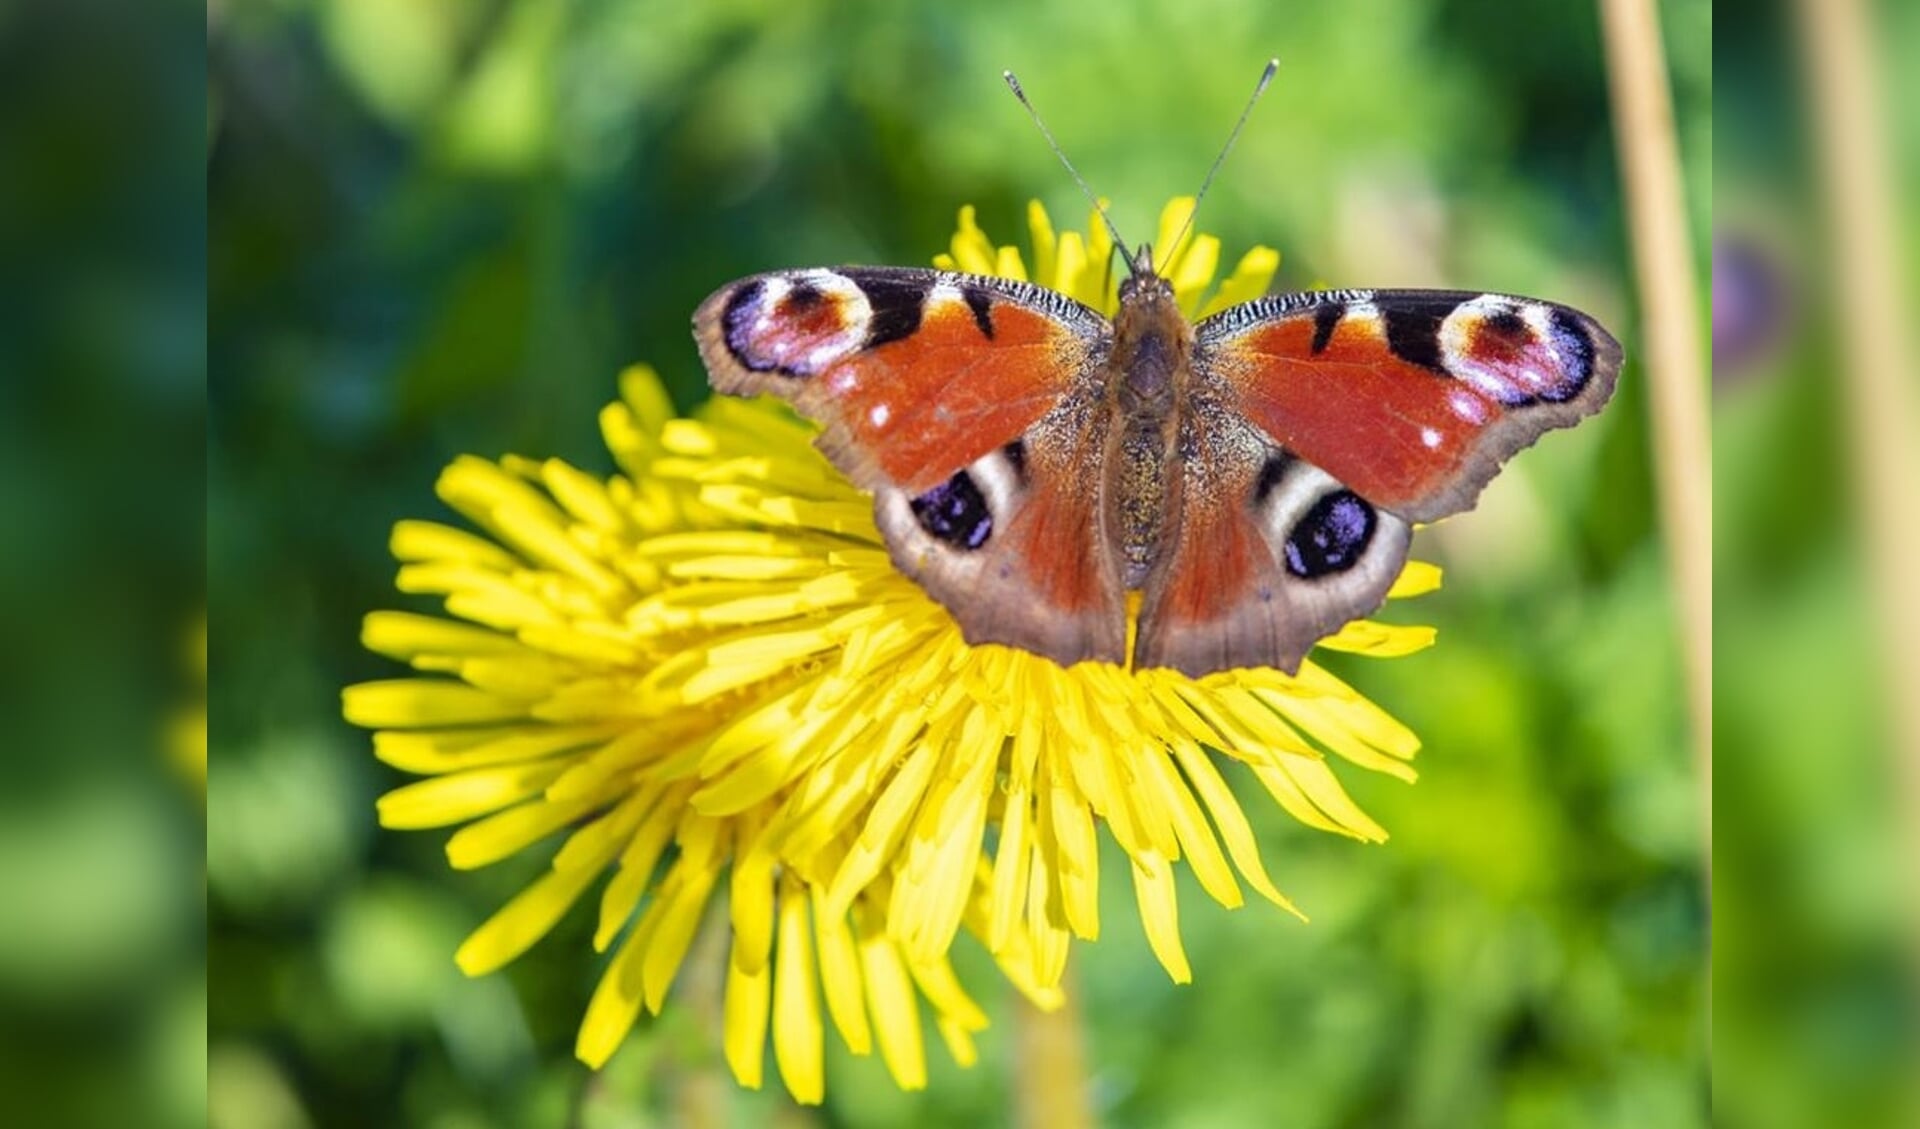 De provincie Drenthe steunt maatregelen die de omgeving meer bij- en vlindervriendelijk maken.